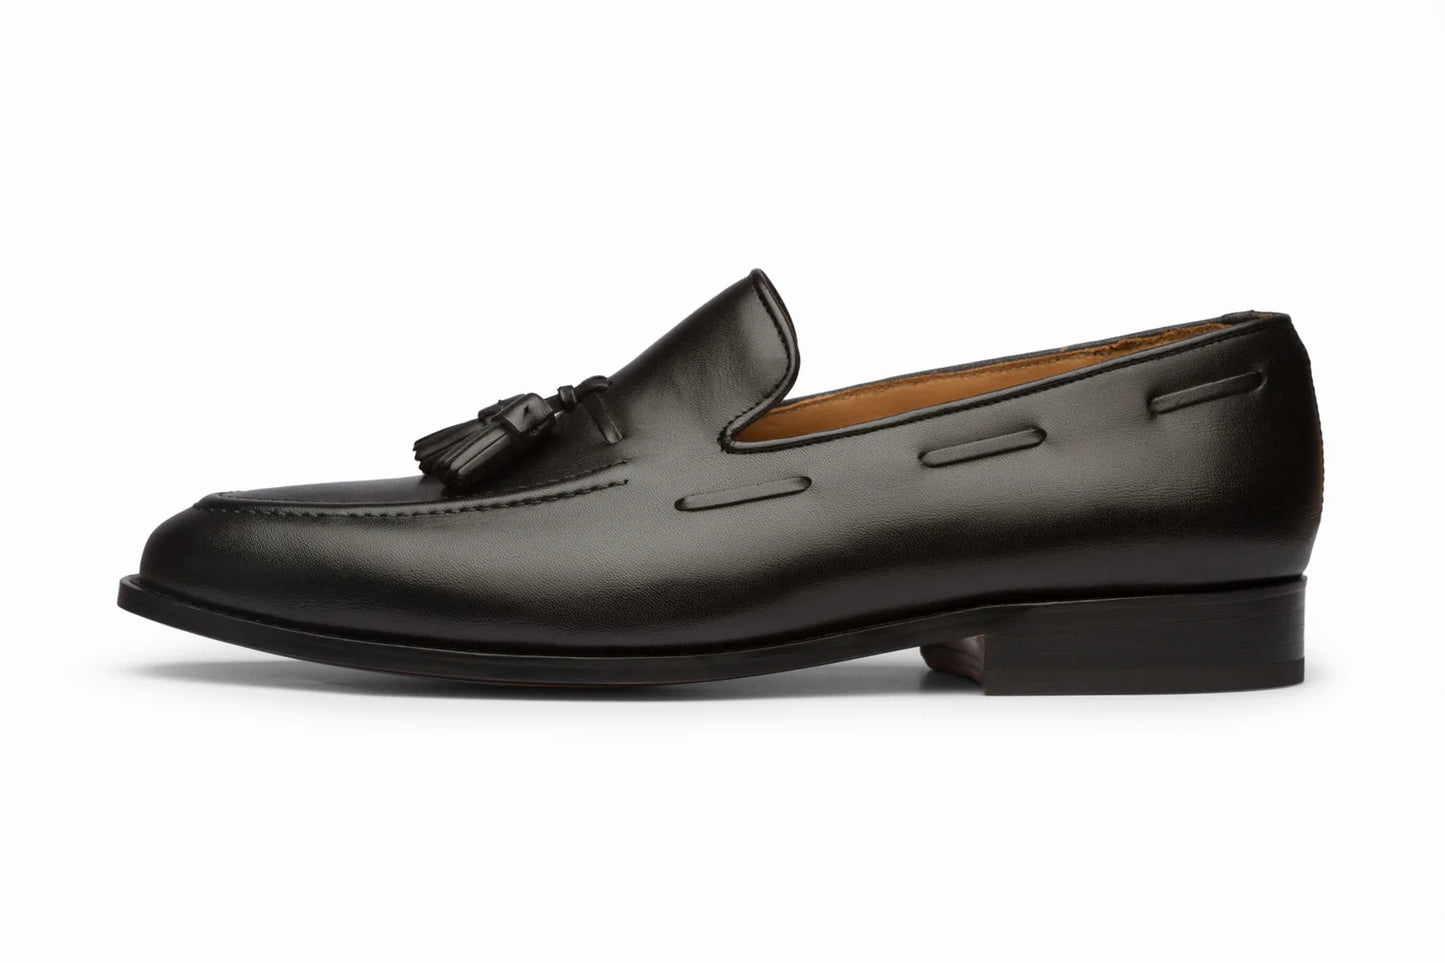 Tassel loafers black, formal shoes for men in Dubai.